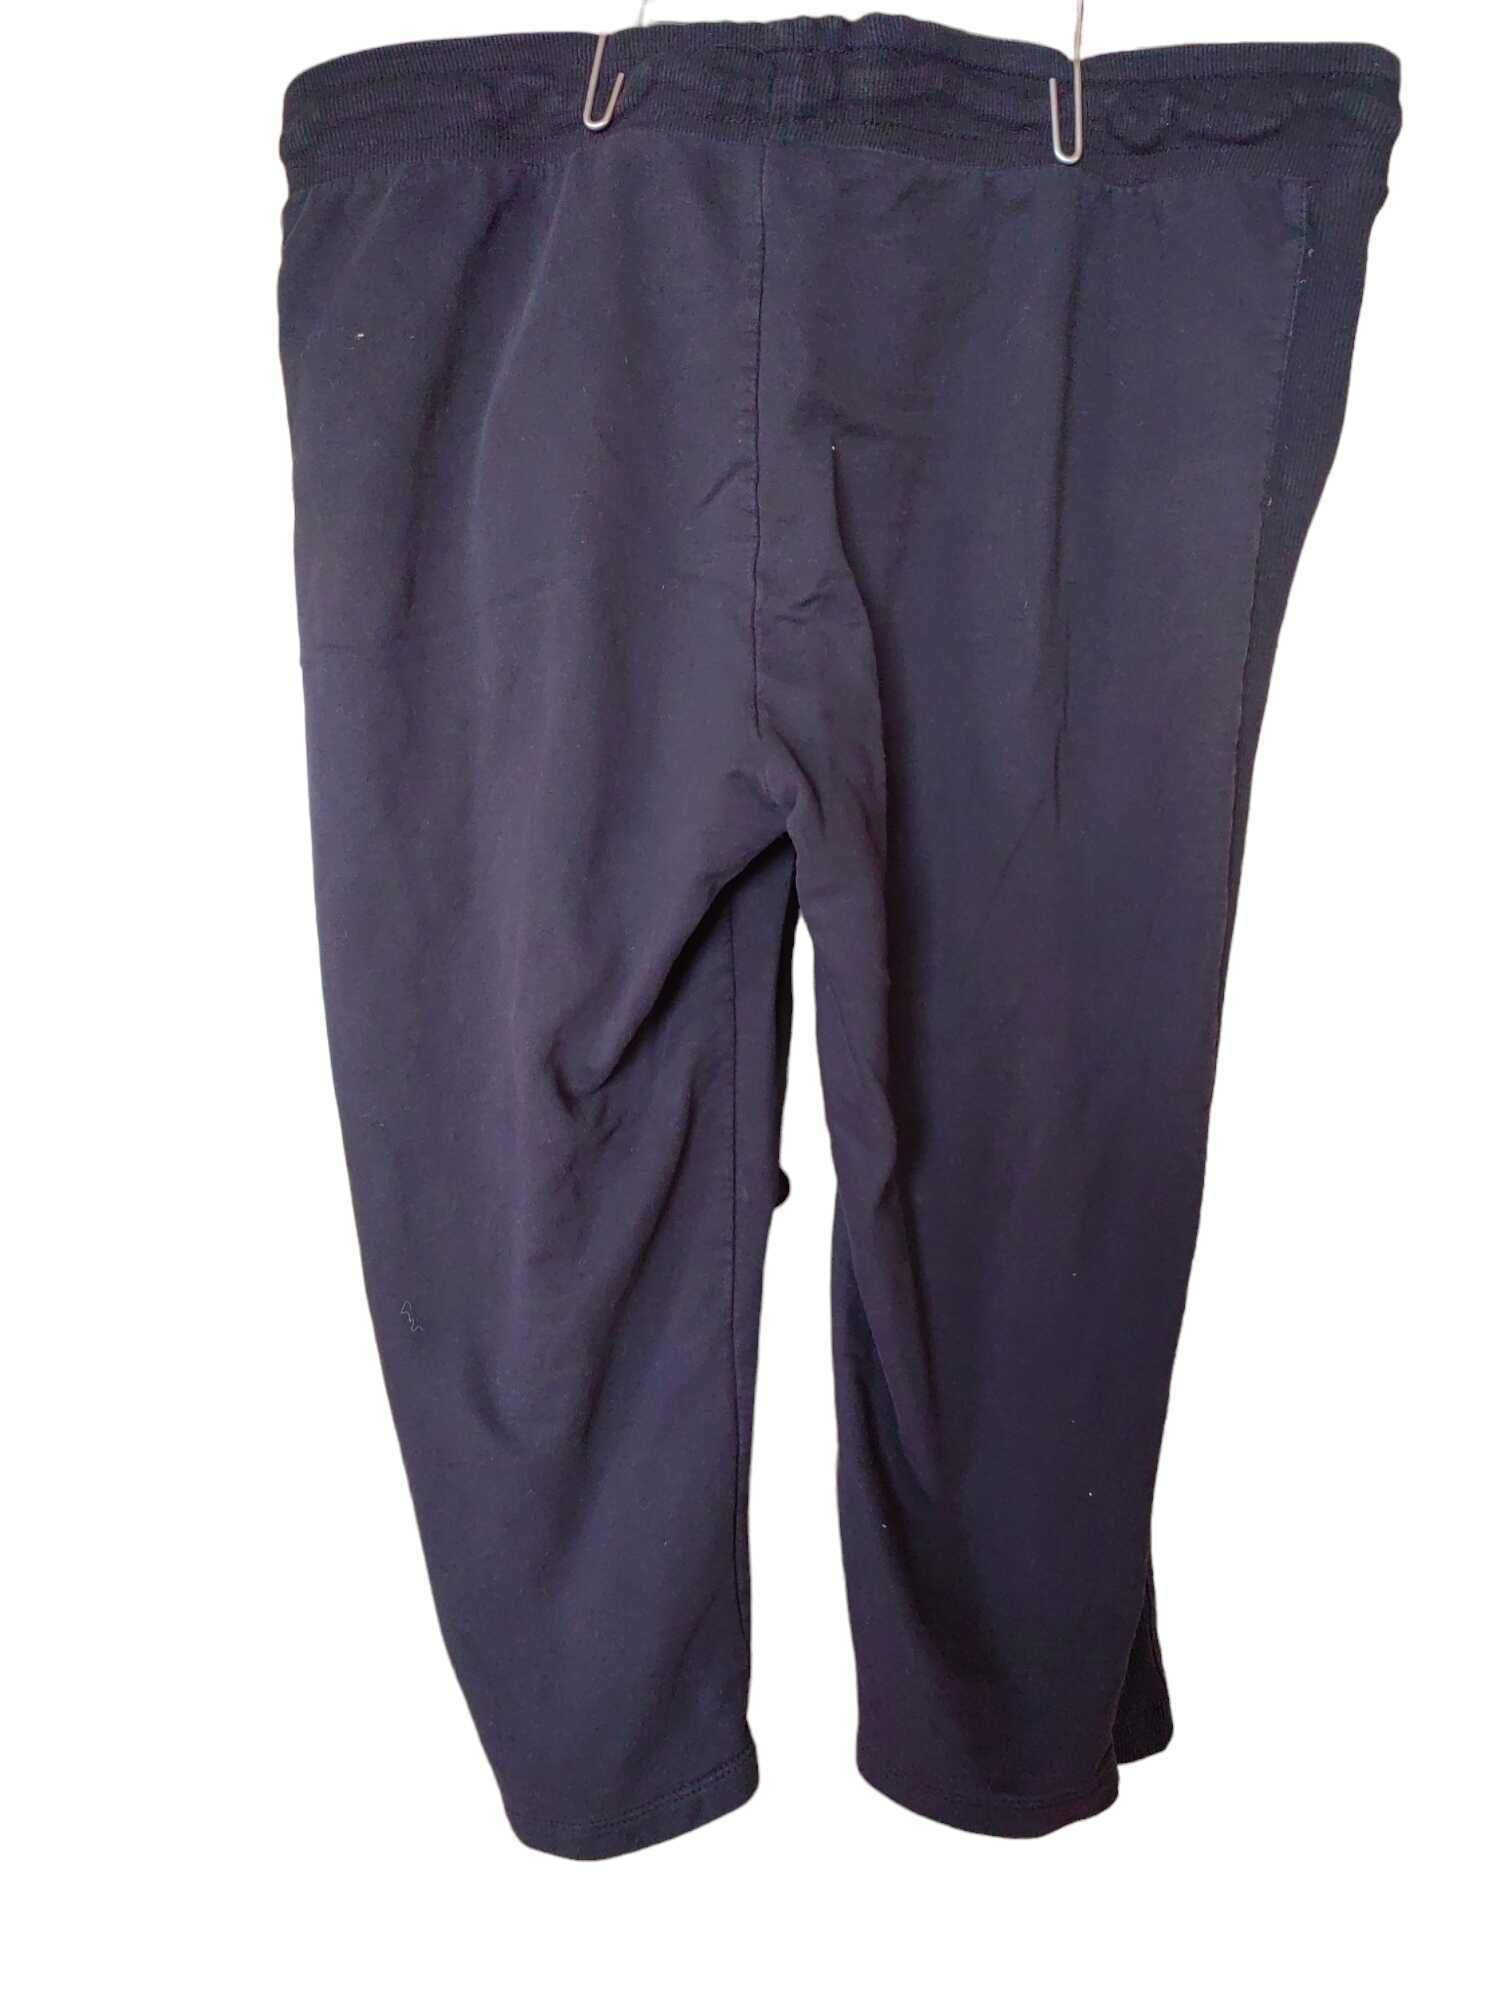 Дамски 3/4 панталон с връзки LC Waikiki, 100% памук, Черни, 3XL